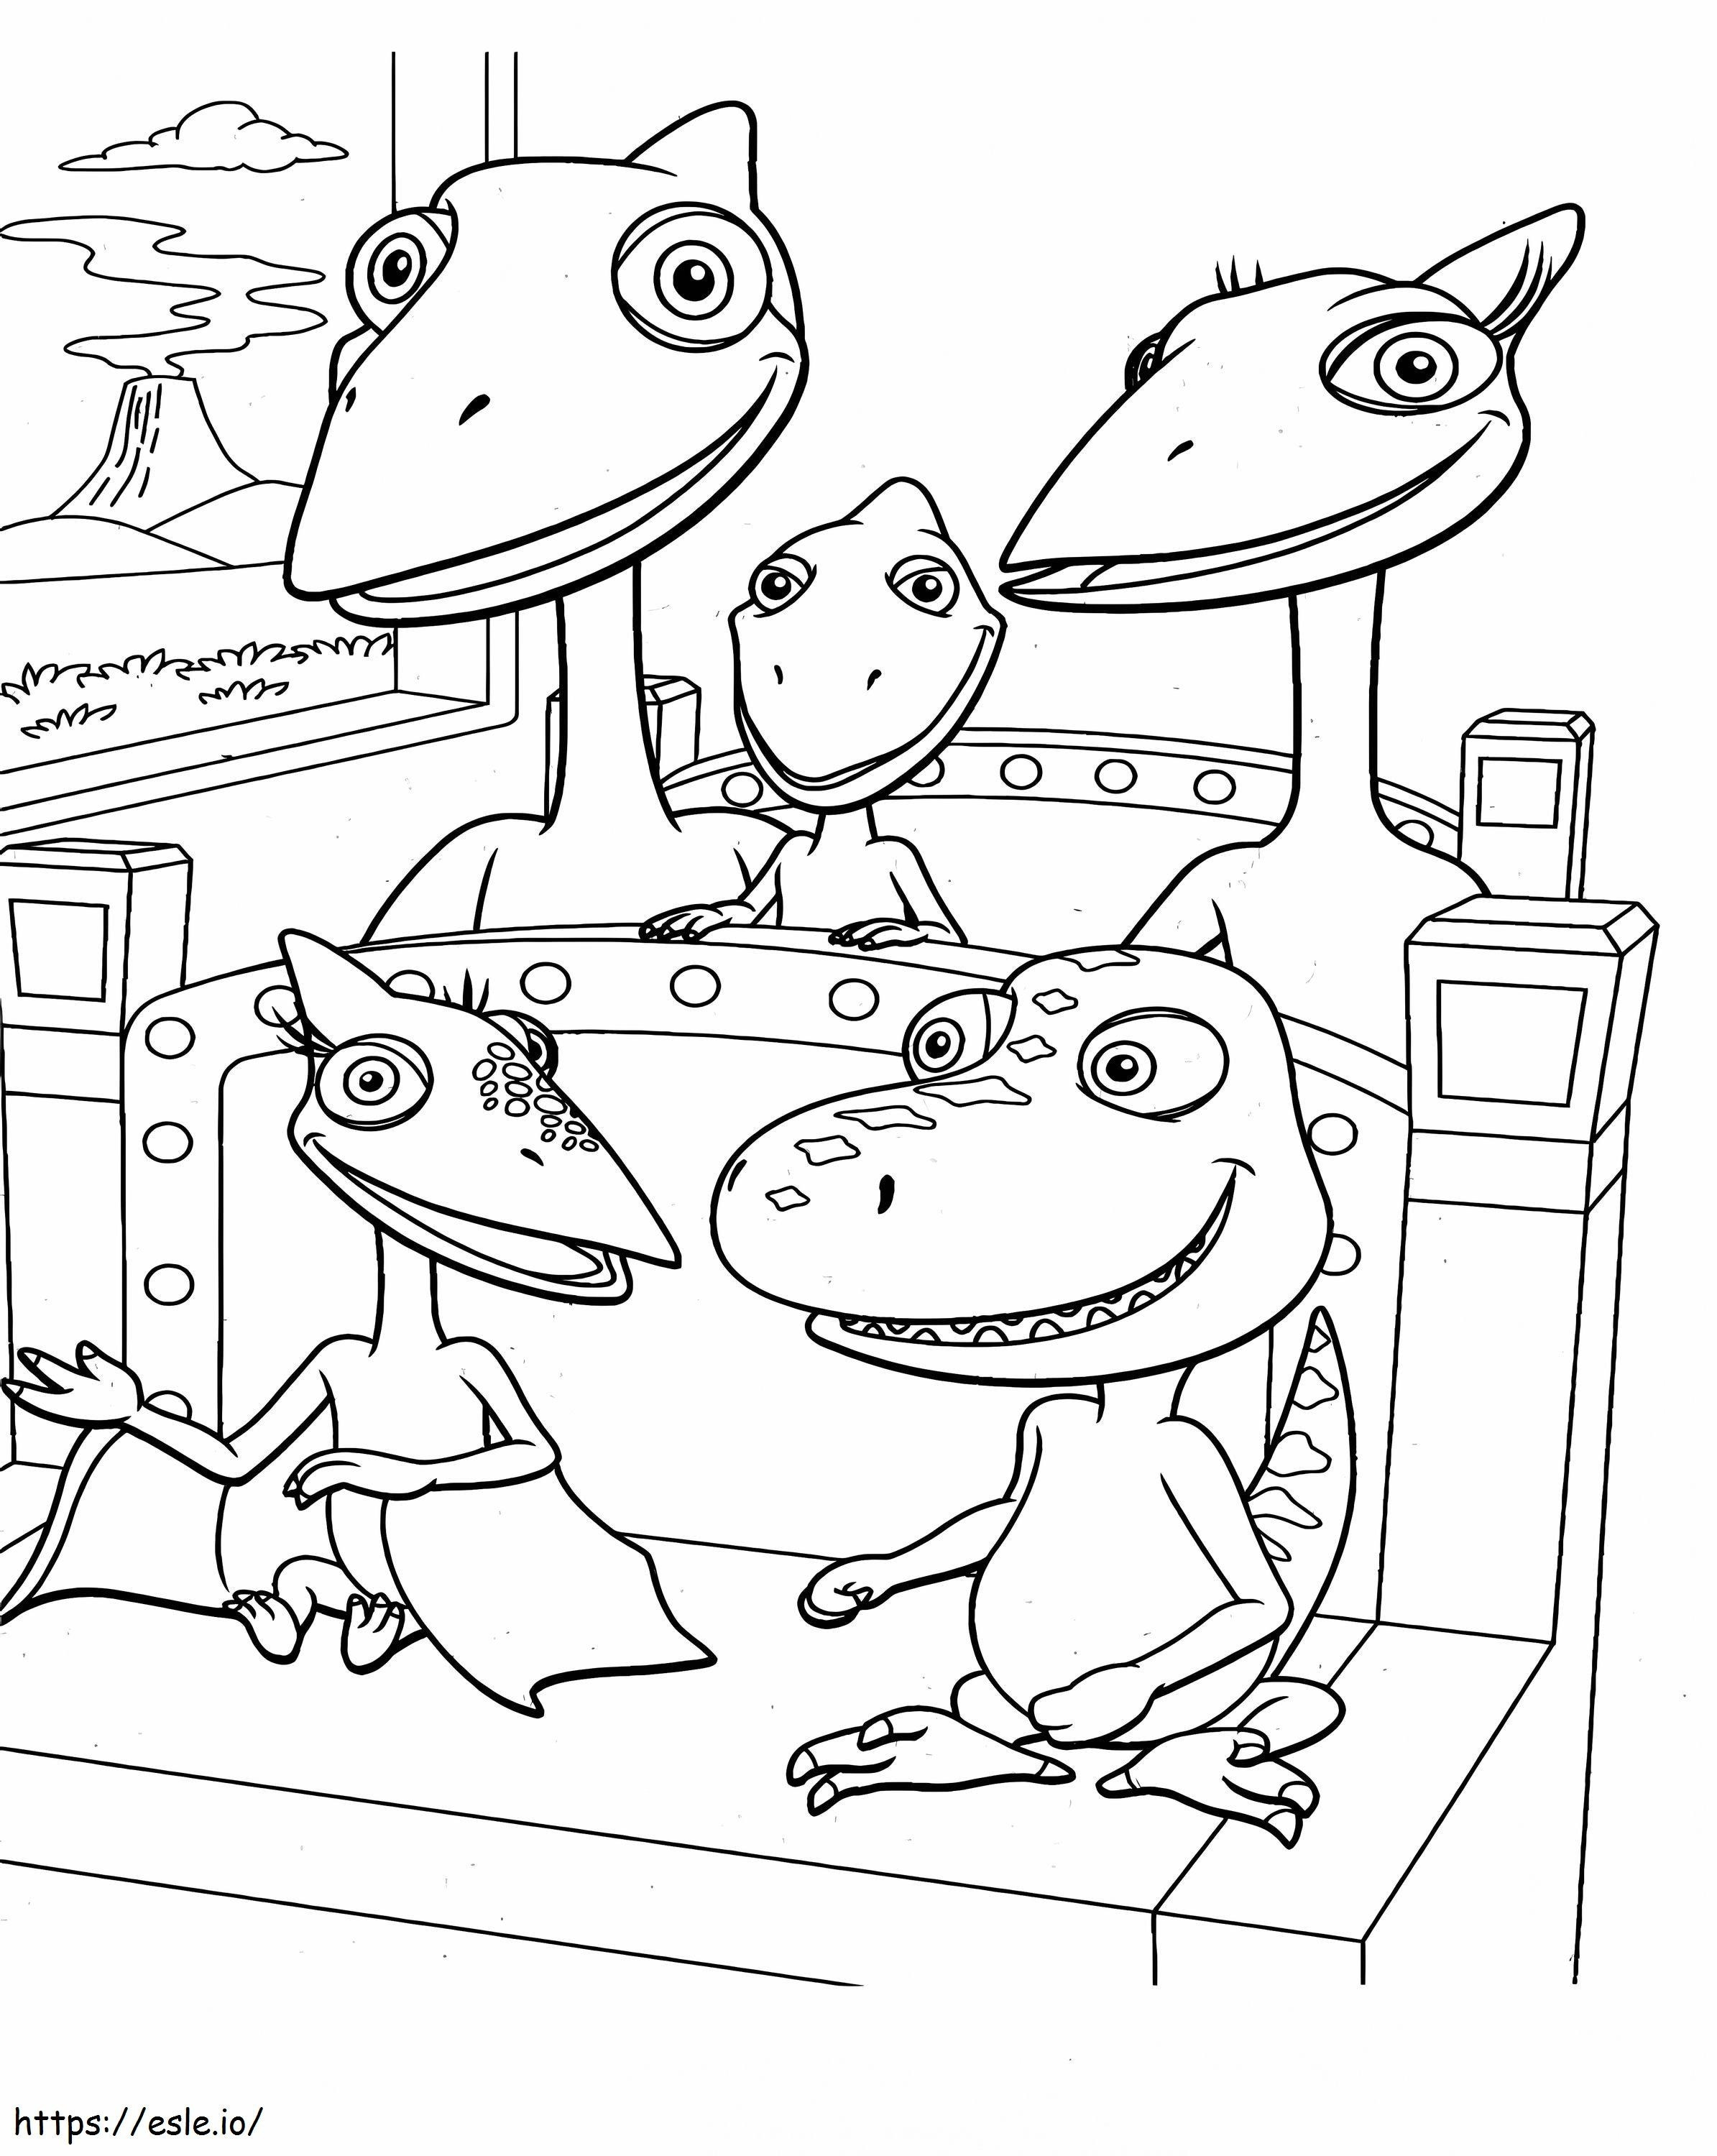 Coloriage Famille de dinosaures Train assis à imprimer dessin